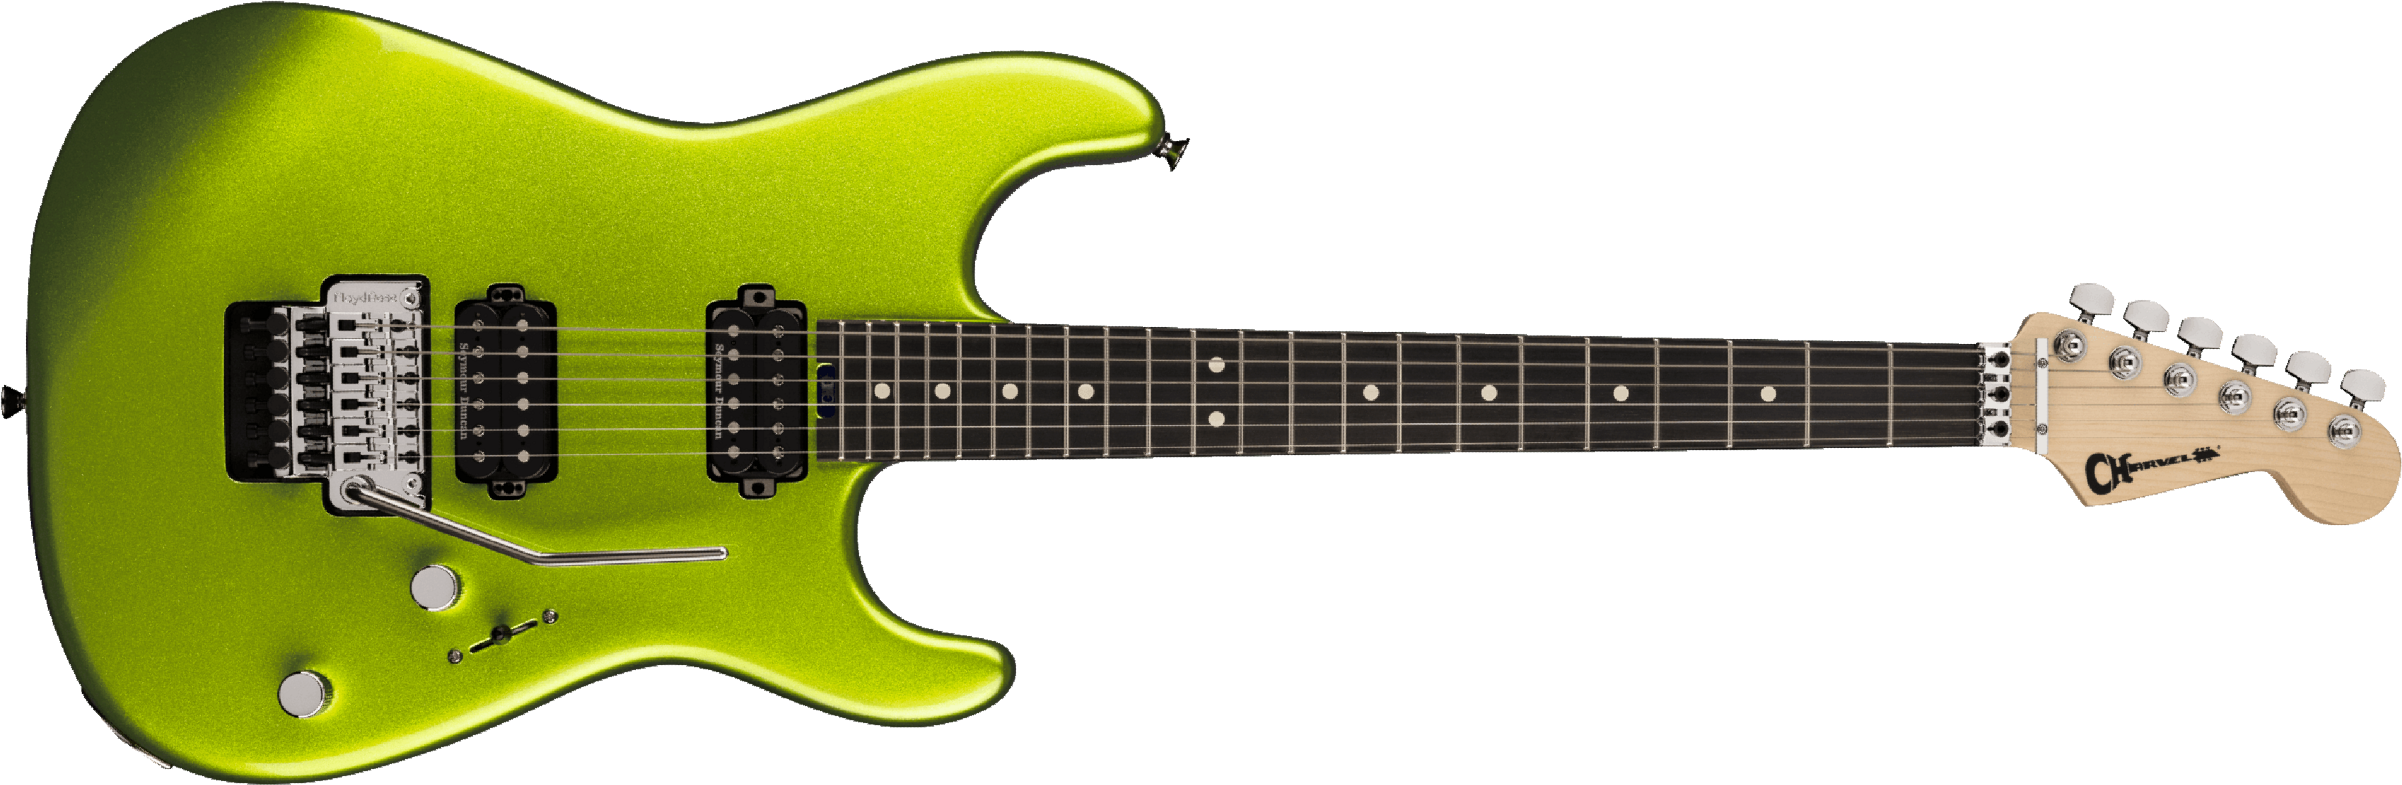 Charvel San Dimas Style 1 Hh Fr E Pro-mod Seymour Duncan Eb - Lime Green Metallic - Guitare Électrique Forme Str - Main picture